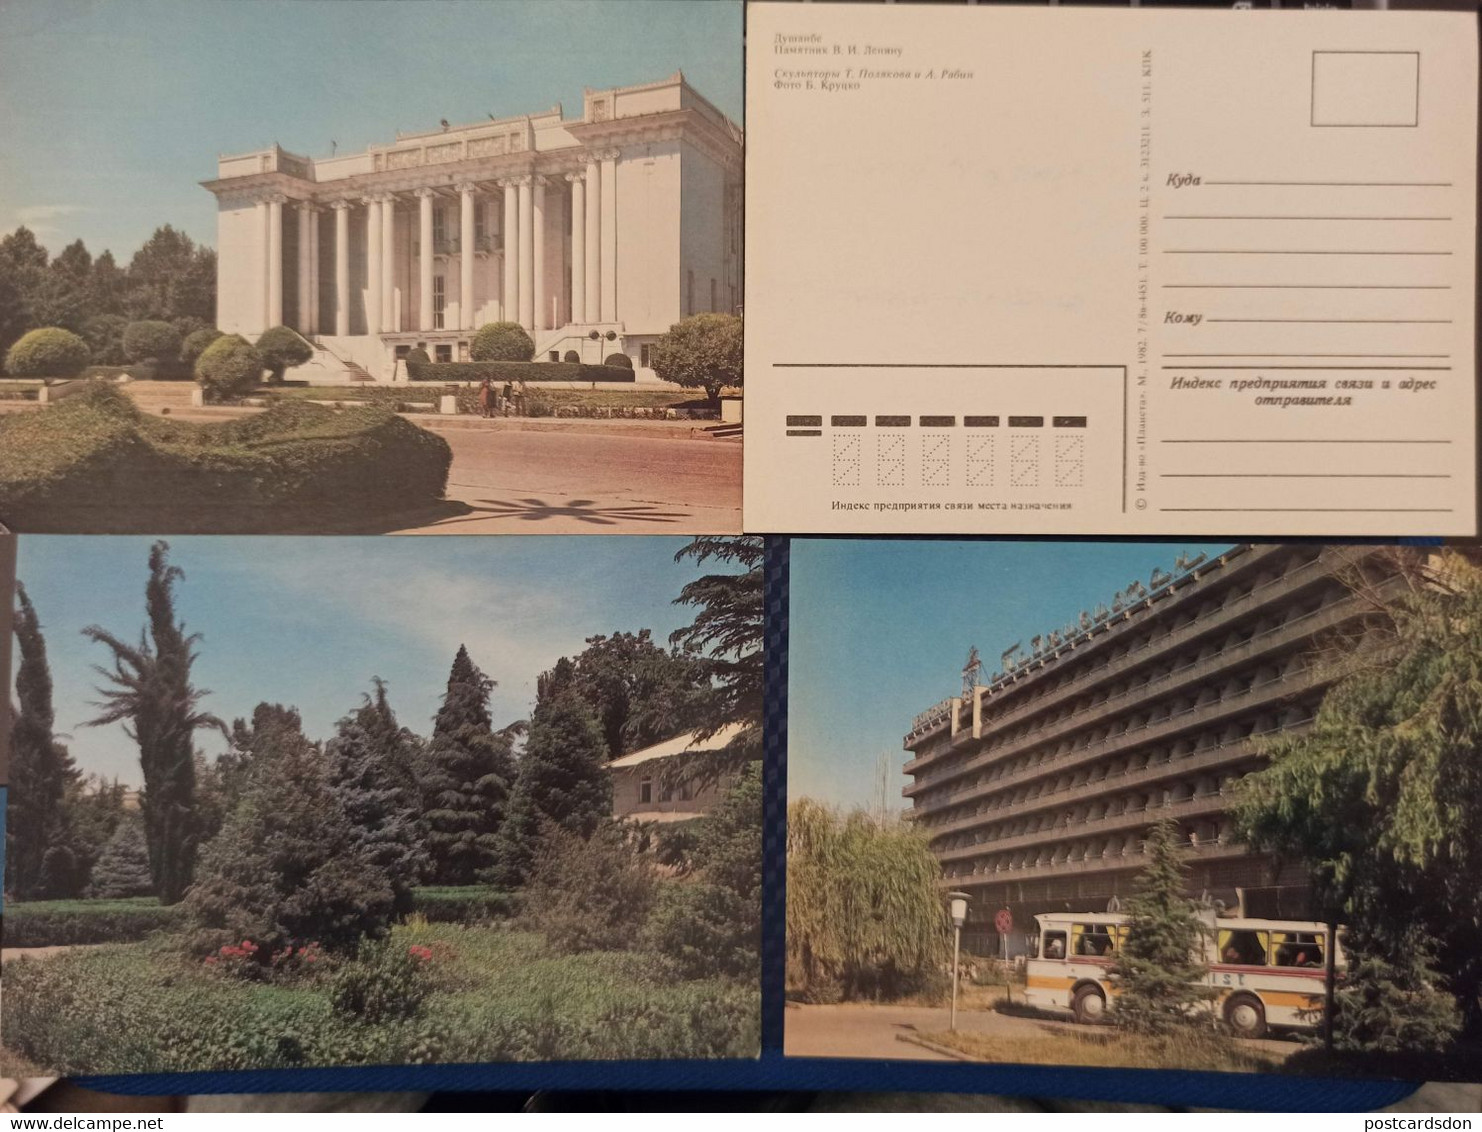 TAJIKISTAN  Dushanbe  Capital.  11 Postcards Lot  - Old USSR Postcard  - 1982 - Tadjikistan